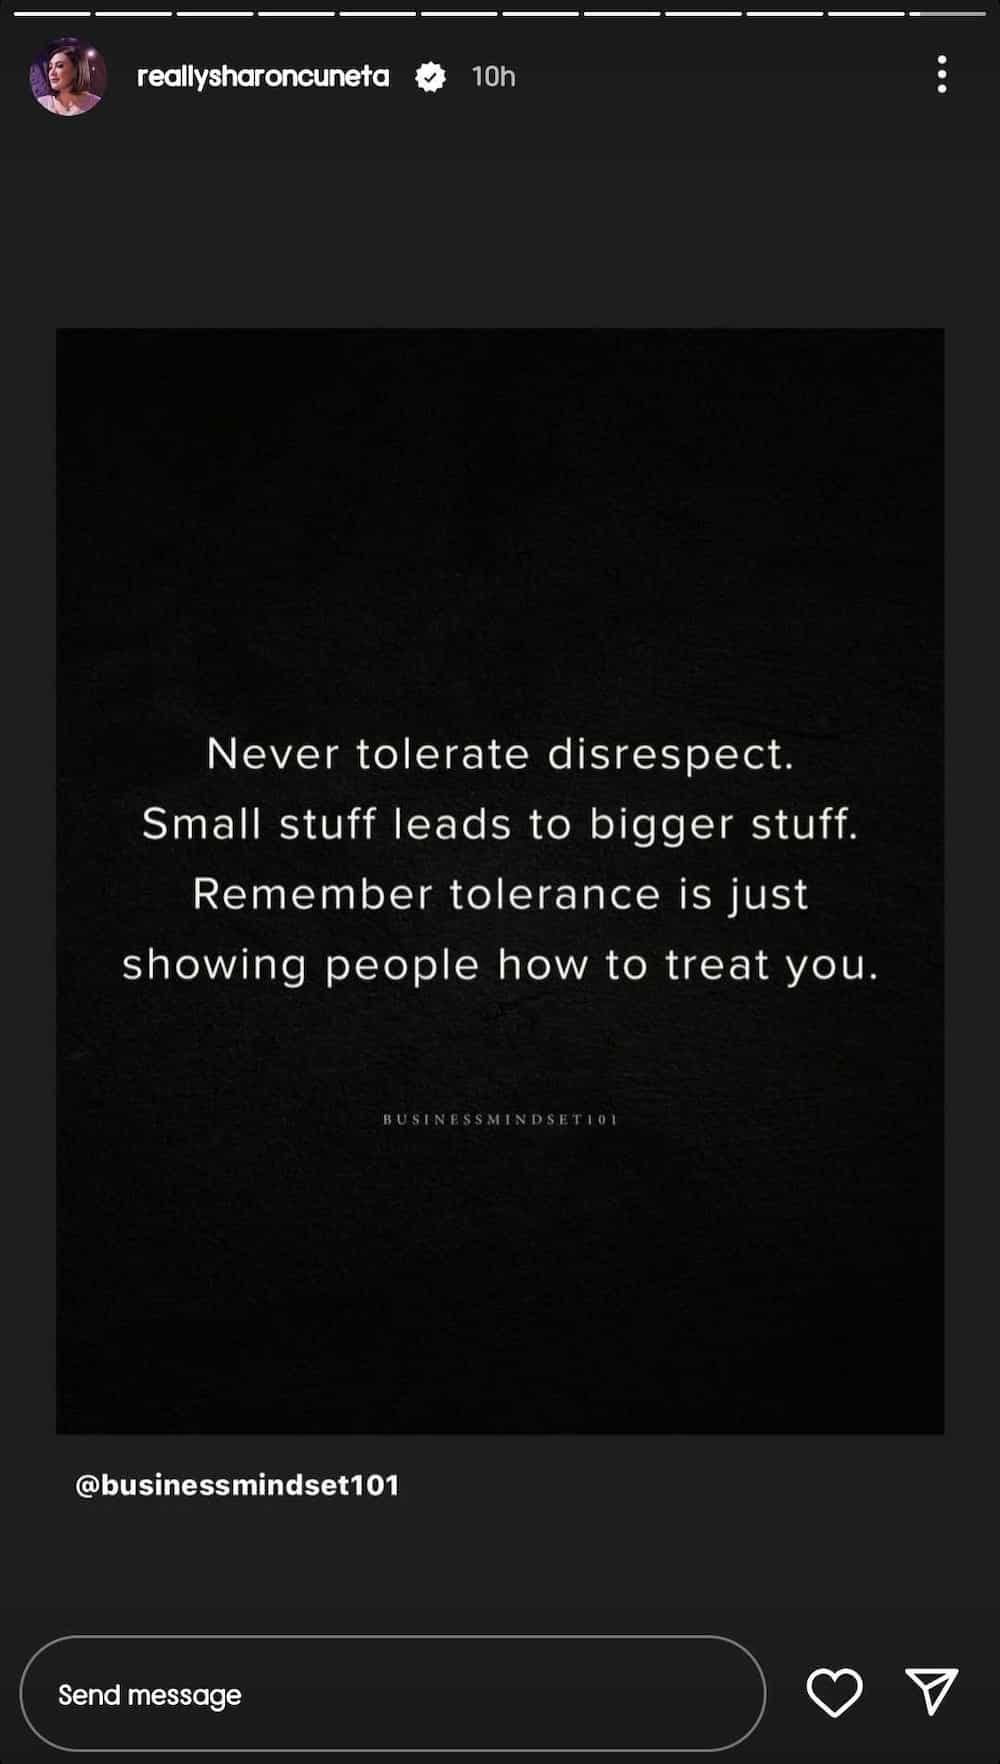 Sharon Cuneta, nag-share ng panibagong quote card: "Never tolerate disrespect"